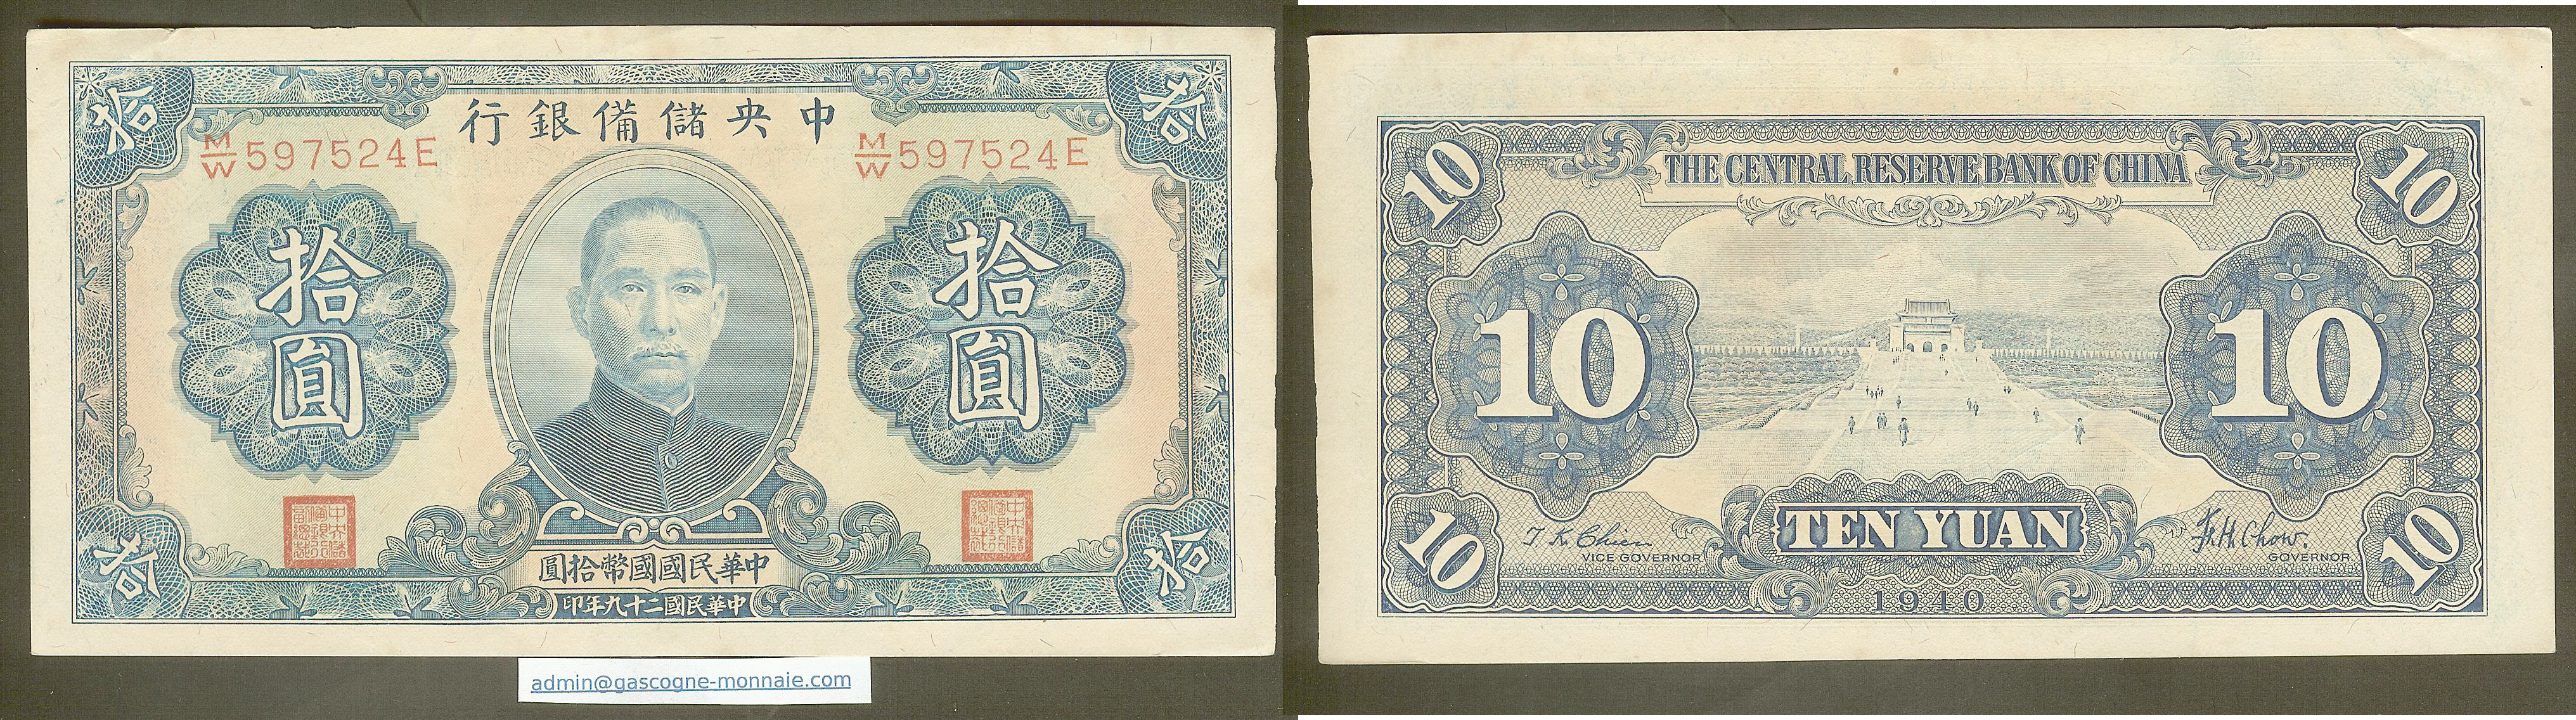 China 10 Yuan Central Erserve bank of China 1940 P. J12h gEF